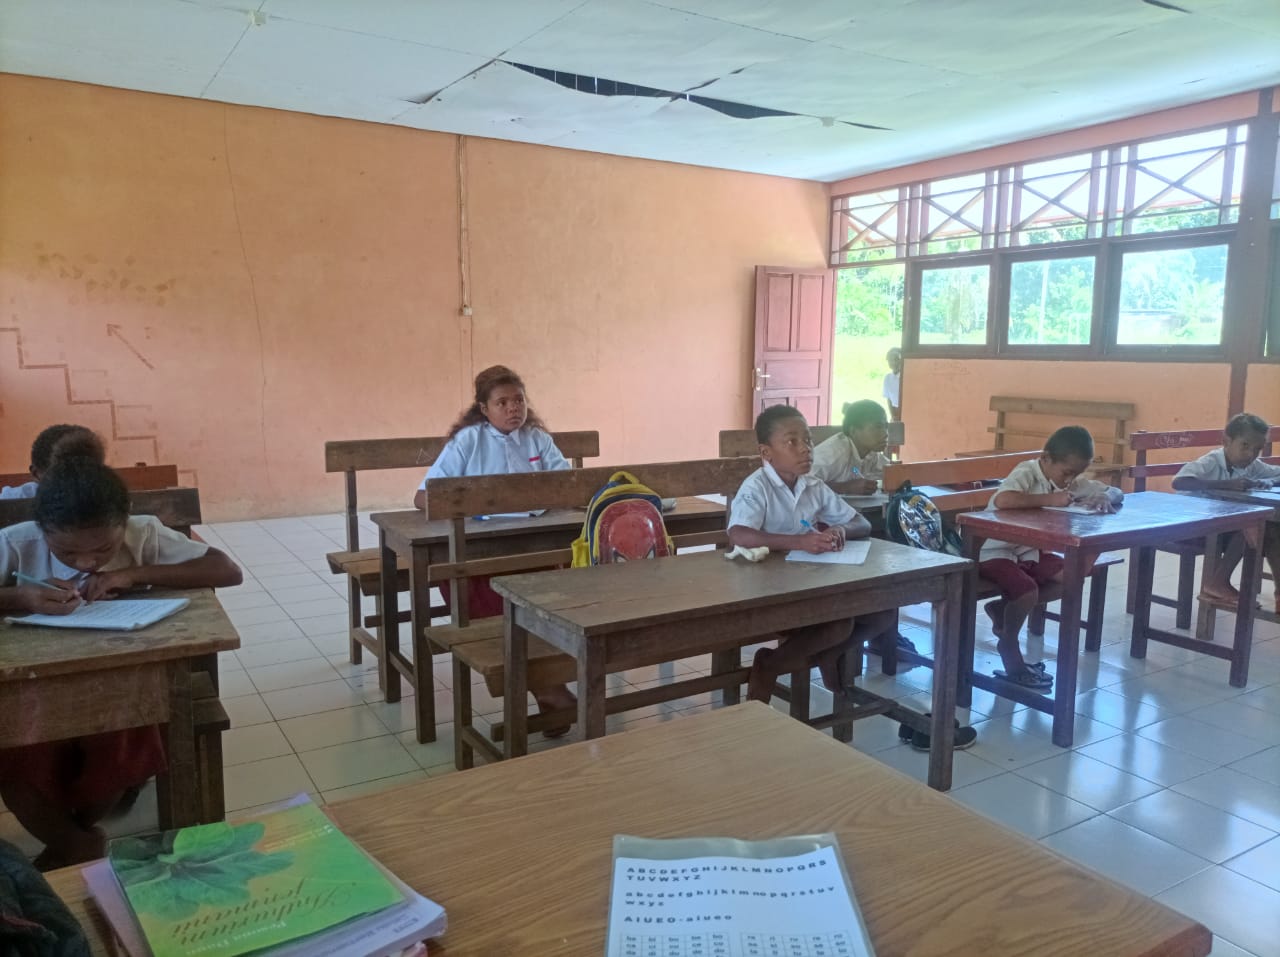 Suasana mengajar berhitung ruang kelas di SDN Saukobye, pada 11 September 2022.